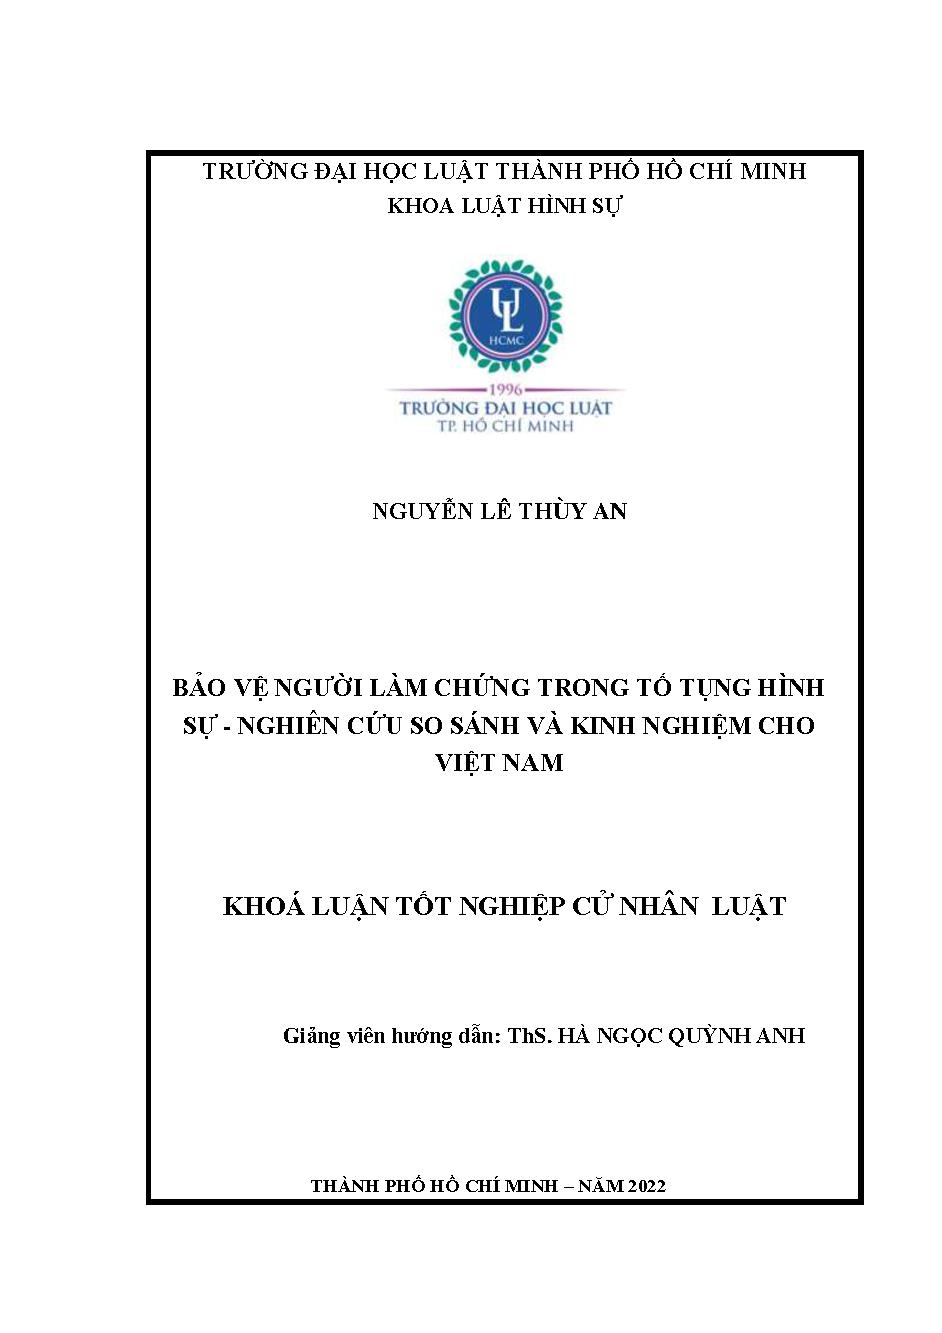 Bảo vệ người làm chứng trong tố tụng hình sự - nghiên cứu so sánh và kinh nghiệm cho Việt Nam